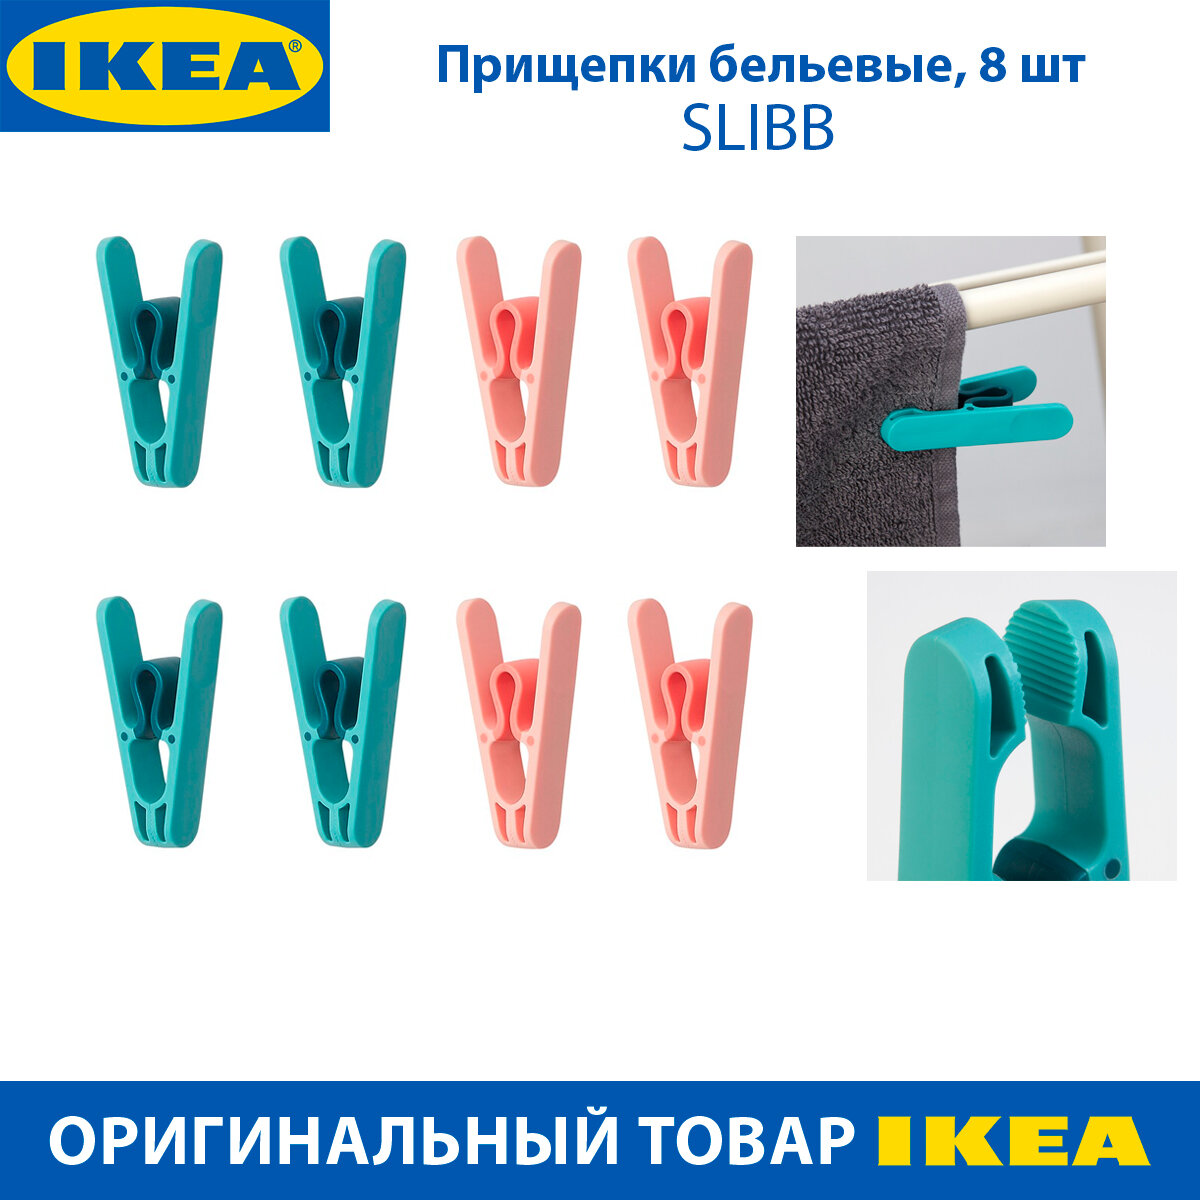 Прищепки бельевые IKEA SLIBB (слибб) прочные пластмассовые розовые и бирюзовые 8 шт в упаковке